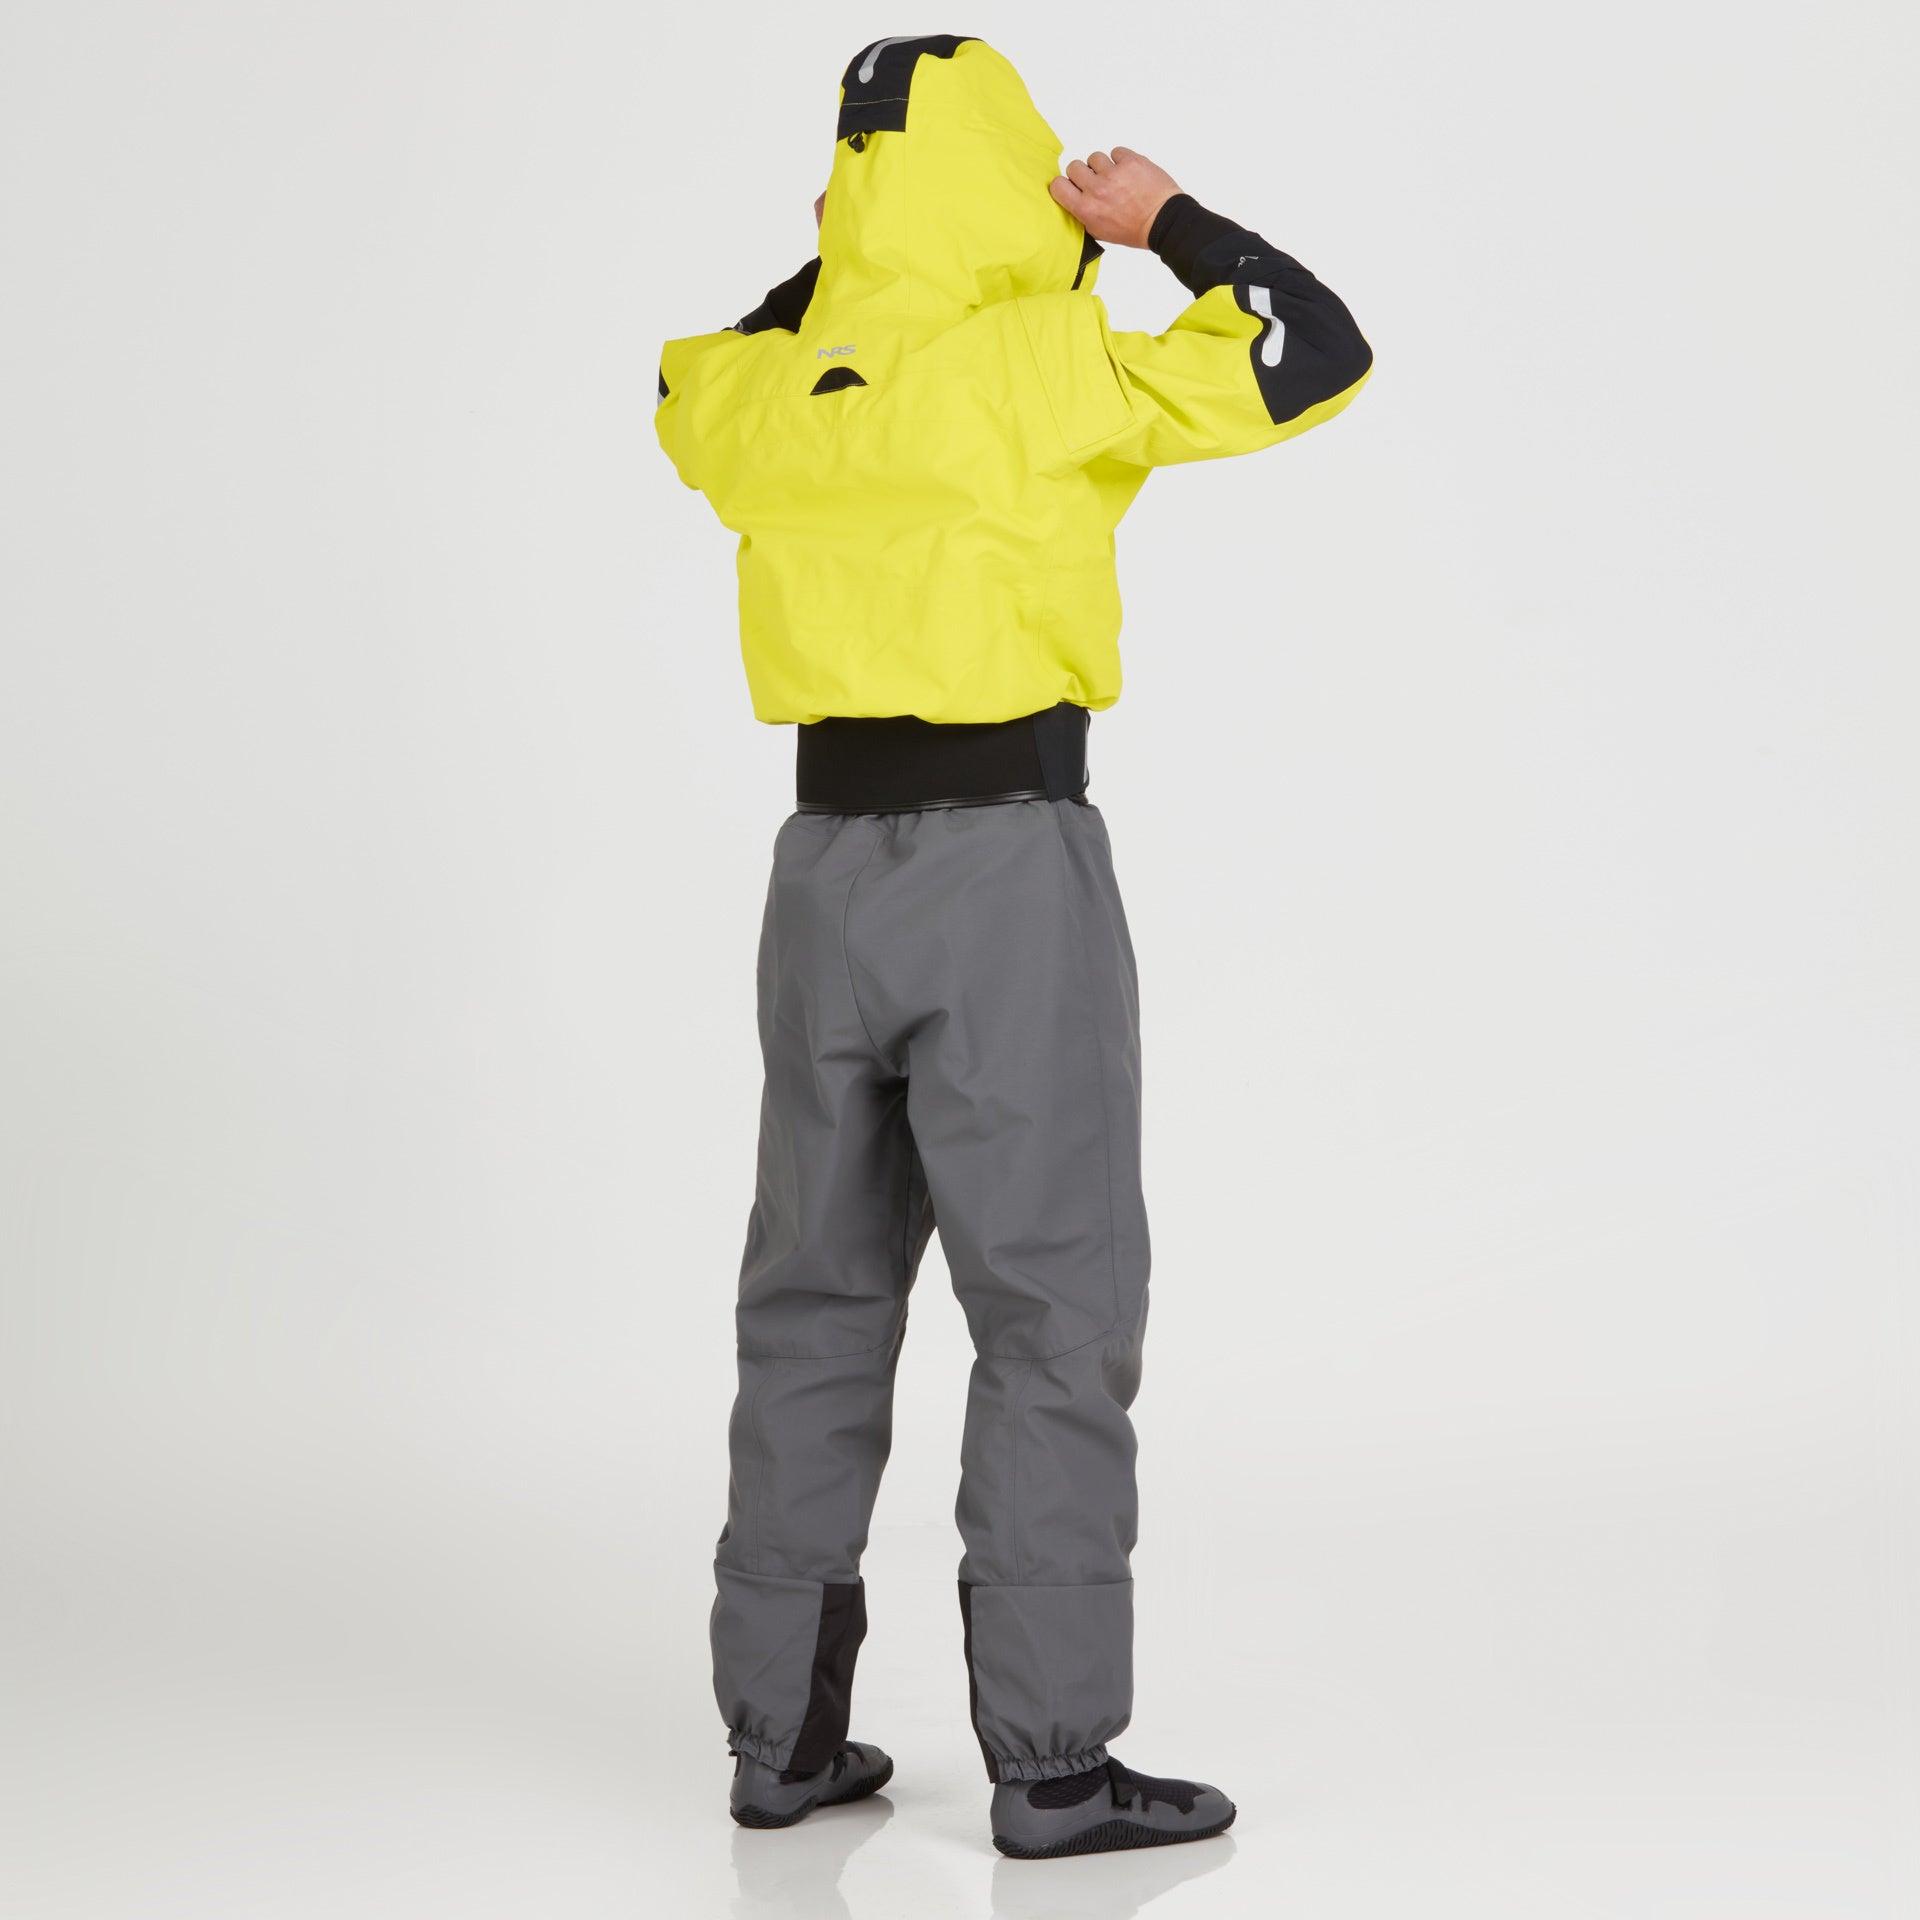 NRS - Men's Navigator GORE-TEX Semi-Dry Suit